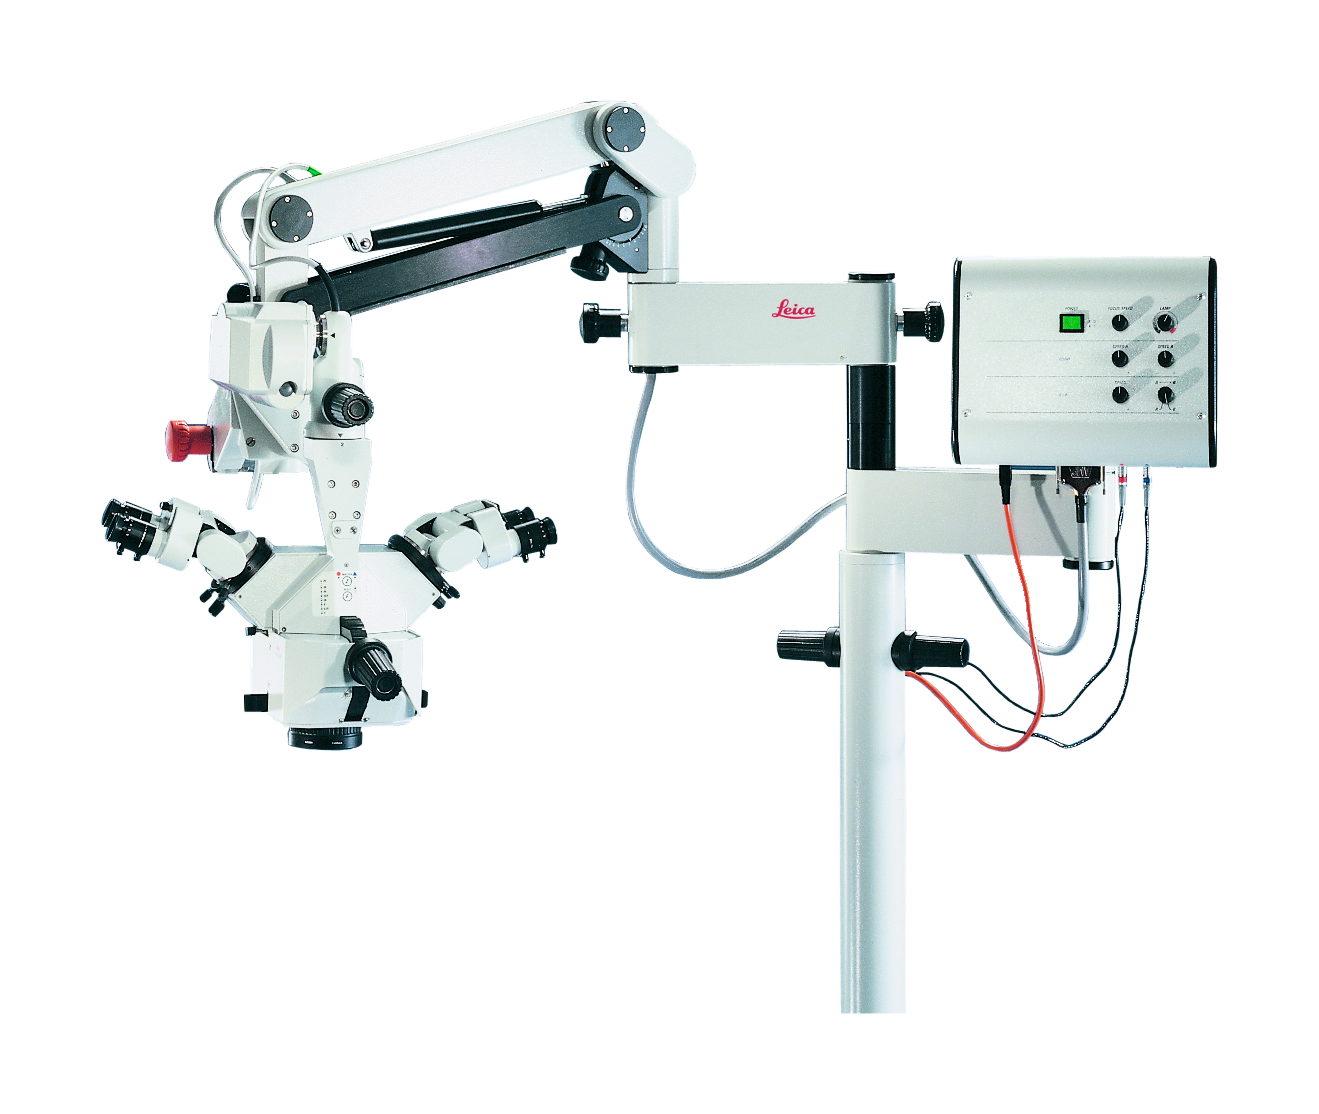 Das Operationsmikroskop Leica M680 für wiederherstellende, Hand-, Herz- und Wirbelsäulenchirurgie sowie Urologie und Gynäkologie